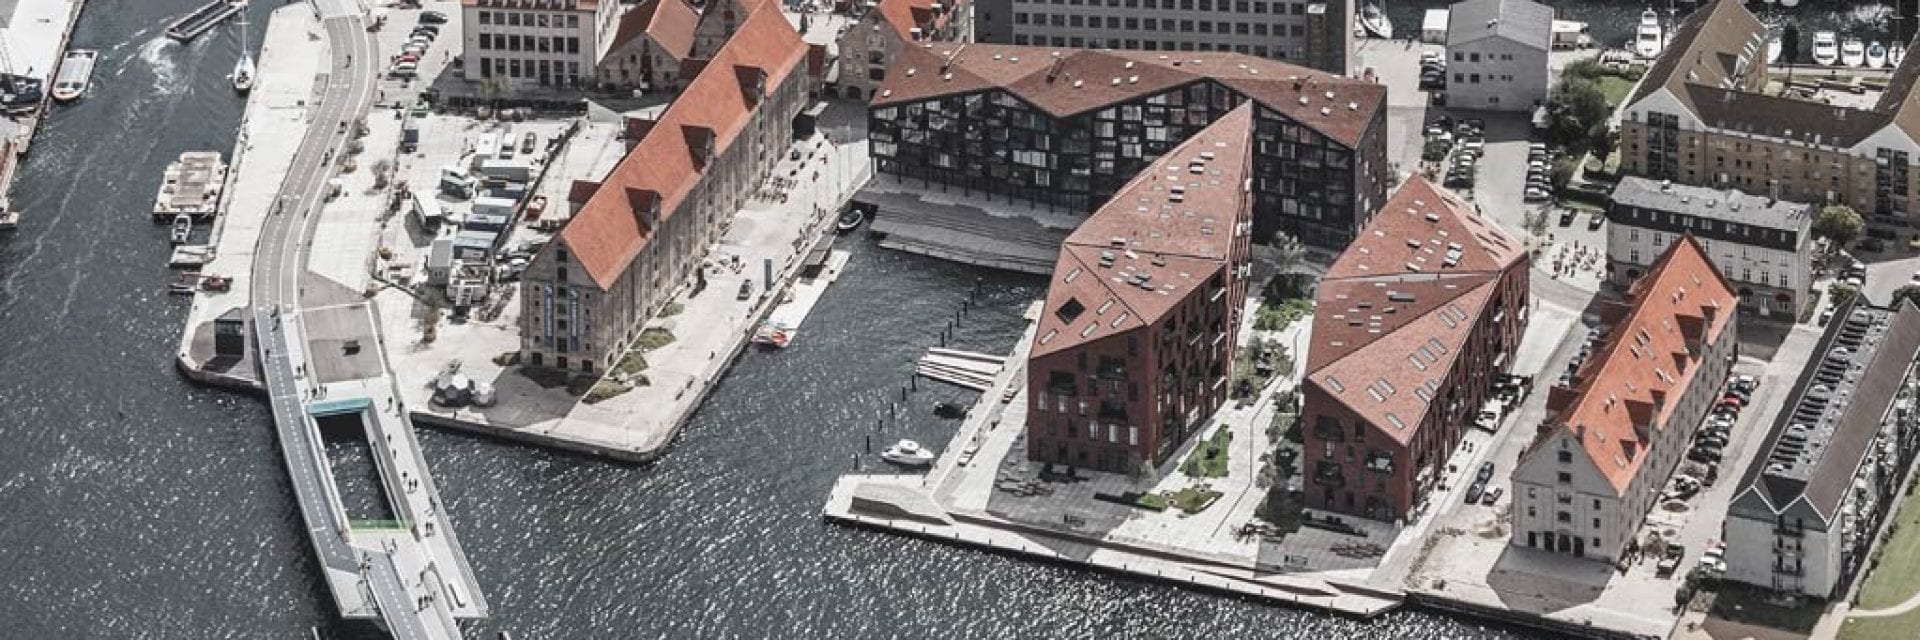 Hilti jobsite reference Krøyers Plads Copenhagen Denmark